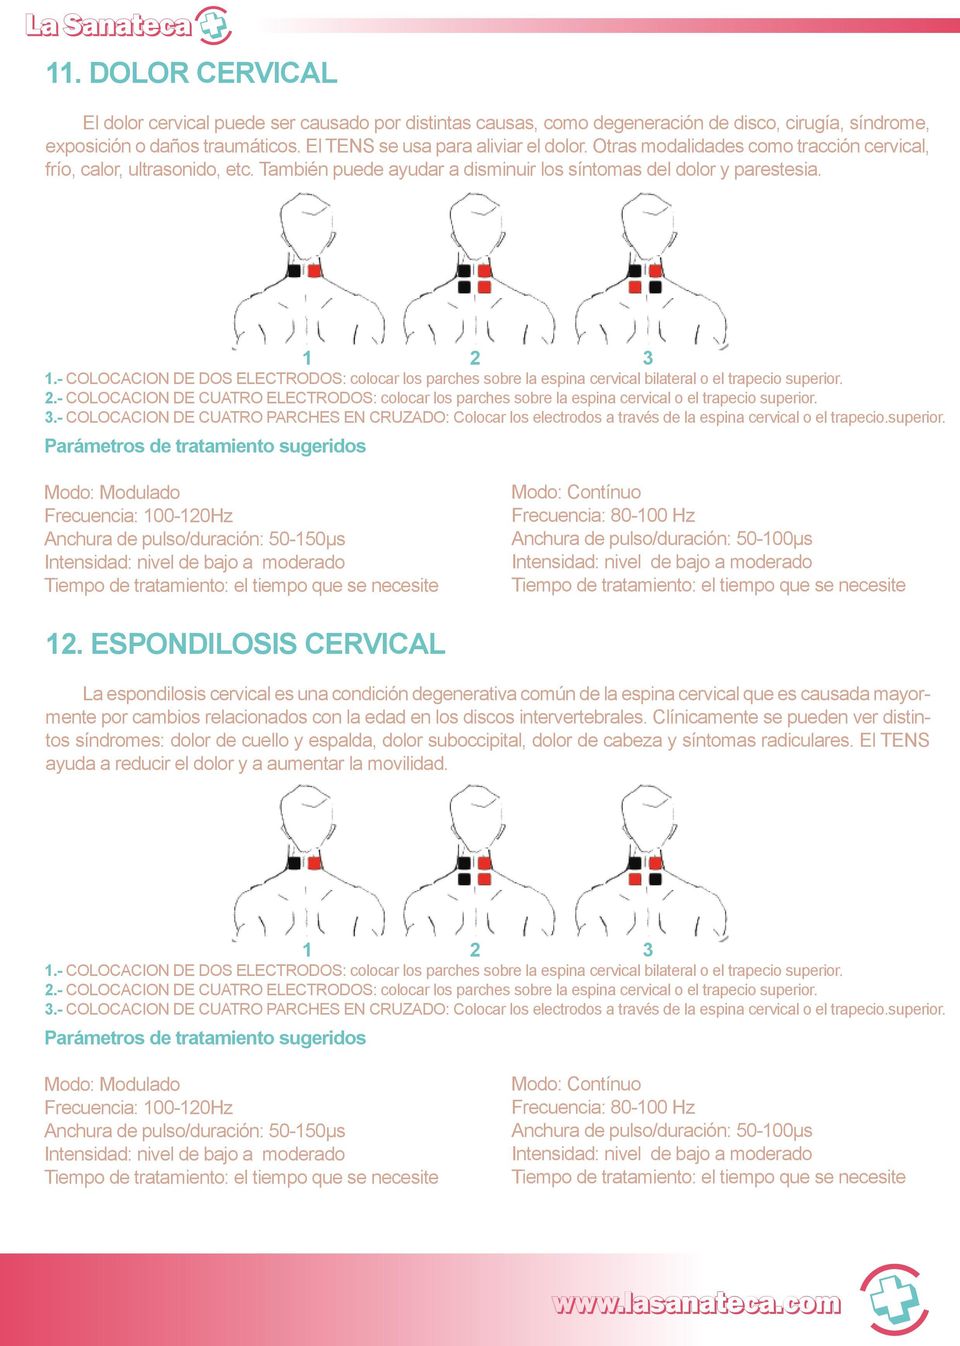 - COLOCACION DE DOS ELECTRODOS: colocar los parches sobre la espina cervical bilateral o el trapecio superior. 2.